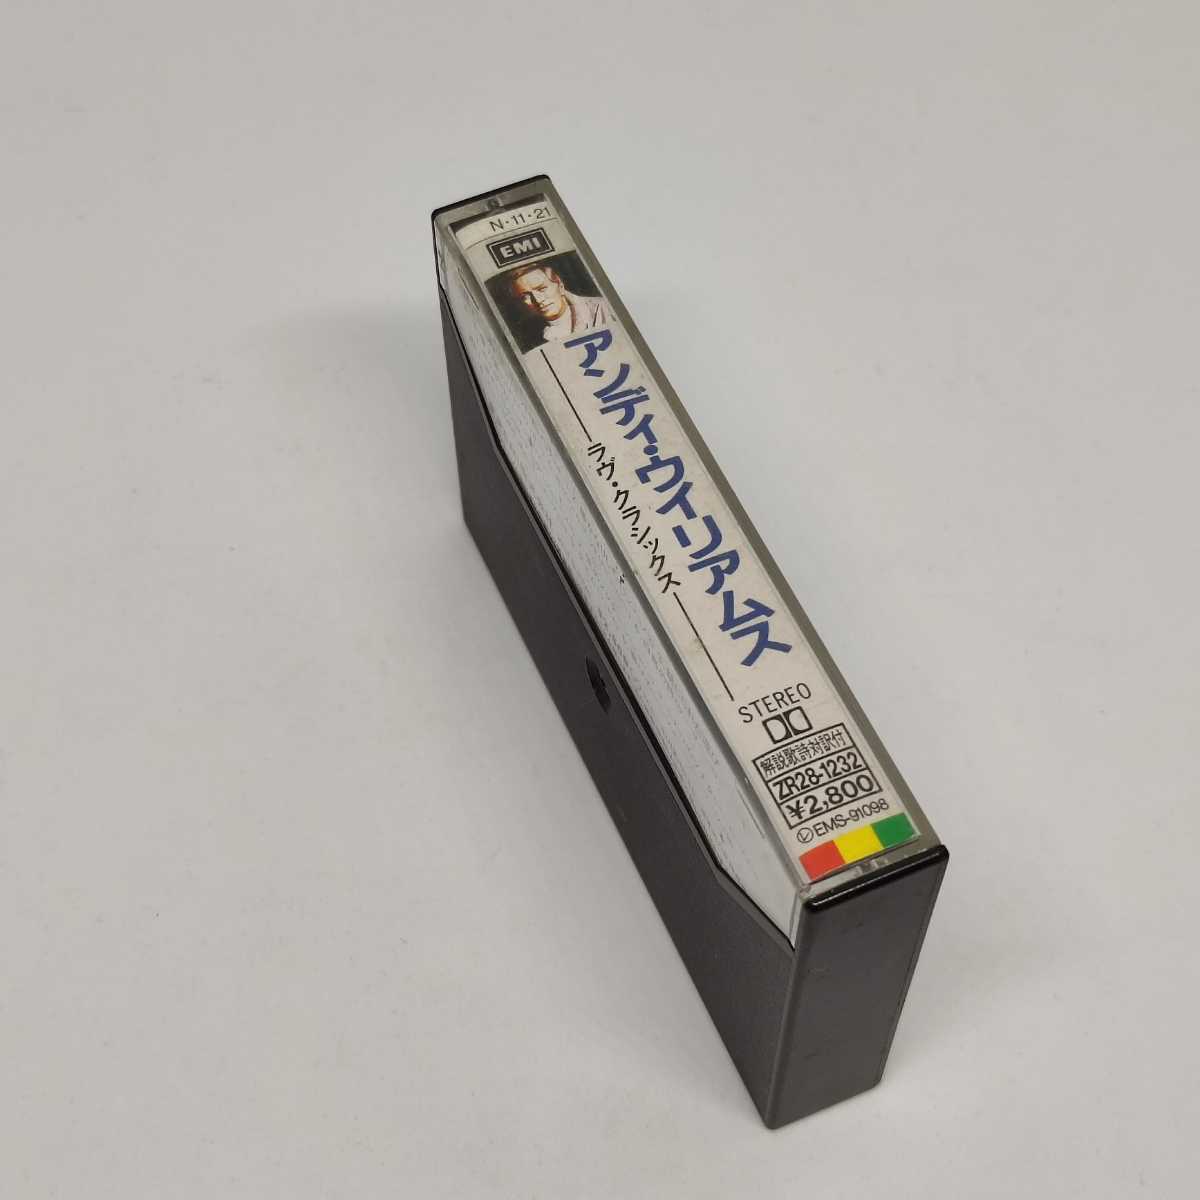 アンディ・ウイリアムス カセット ミュージックテープ ラヴ・クラシックス 13曲 日本盤 ロイヤル・フィル_画像2